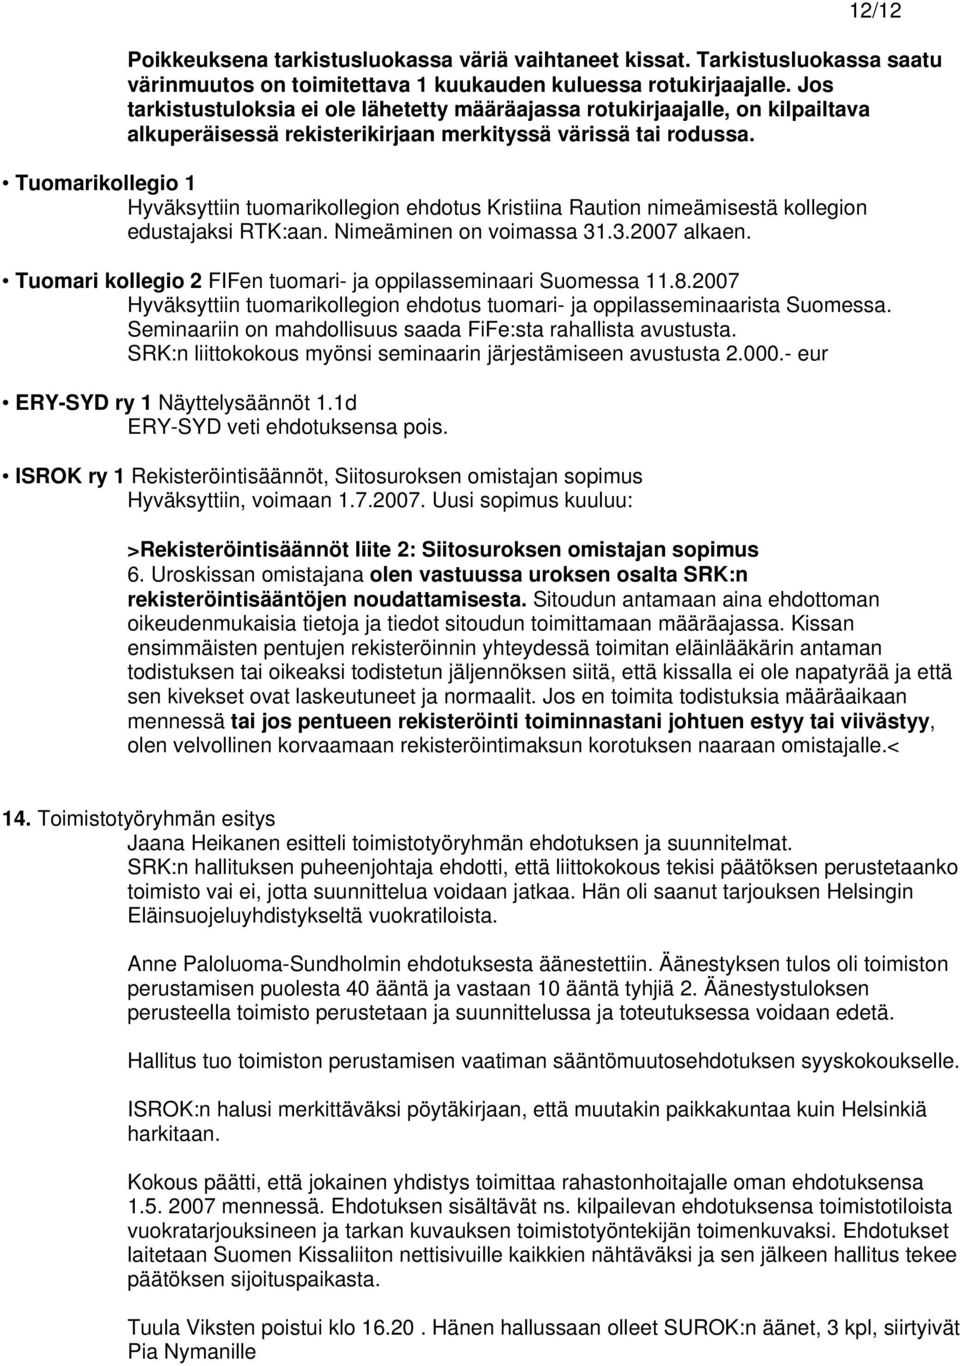 Tuomarikollegio 1 Hyväksyttiin tuomarikollegion ehdotus Kristiina Raution nimeämisestä kollegion edustajaksi RTK:aan. Nimeäminen on voimassa 31.3.2007 alkaen.